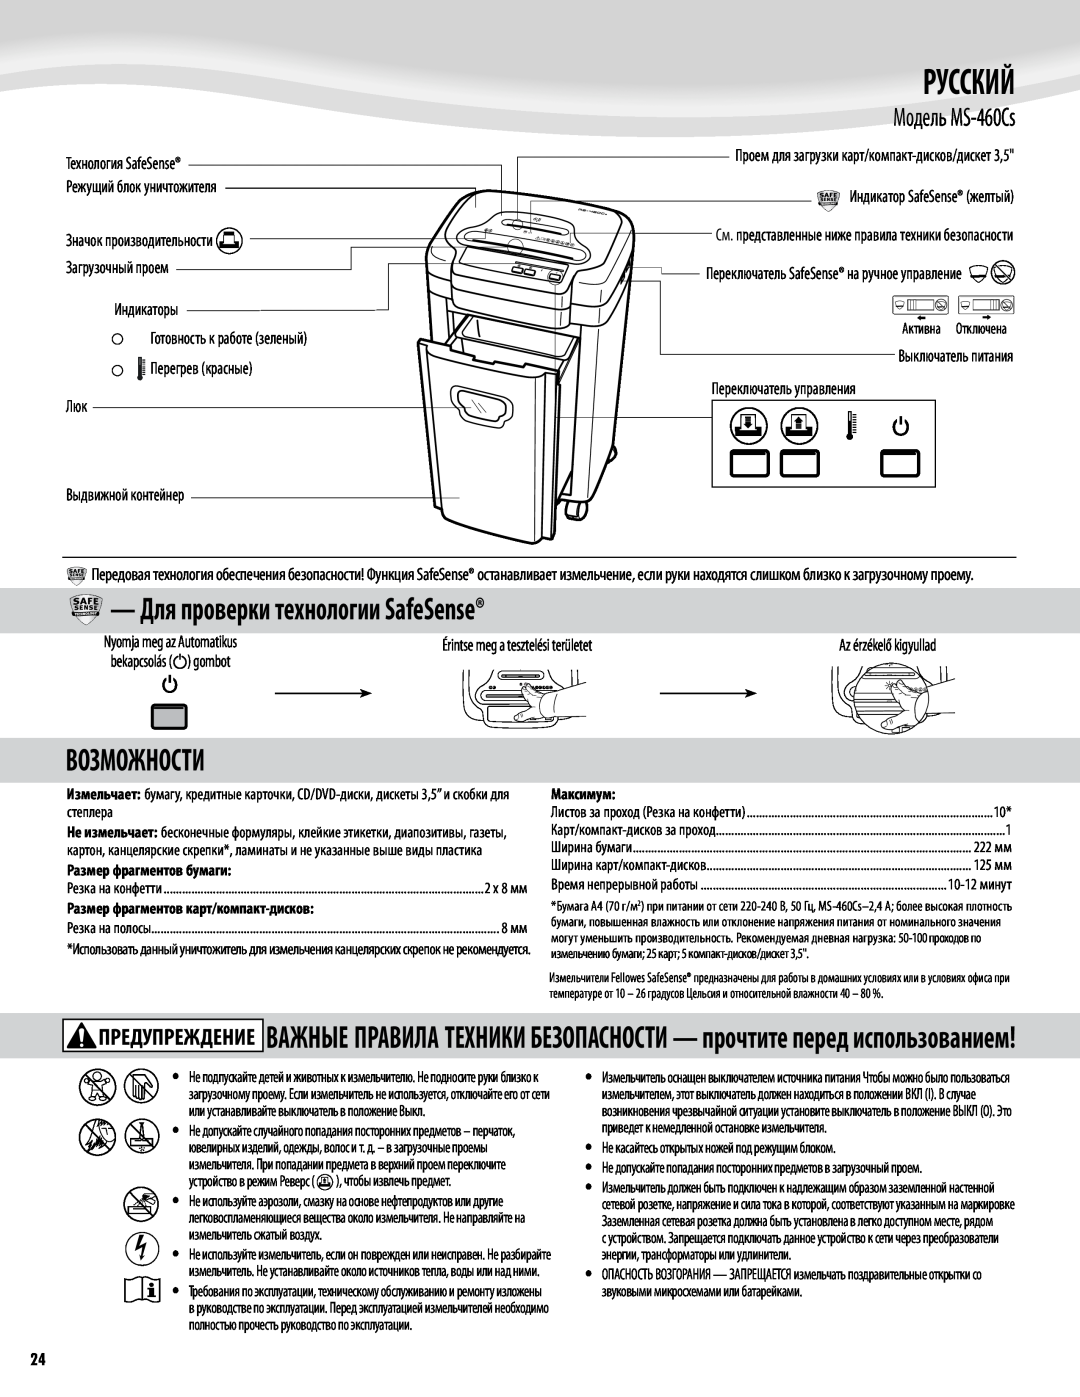 Fellowes Model MS-460Cs manual Русский, Для проверки технологии SafeSense, Возможности, Модель MS-460Cs 